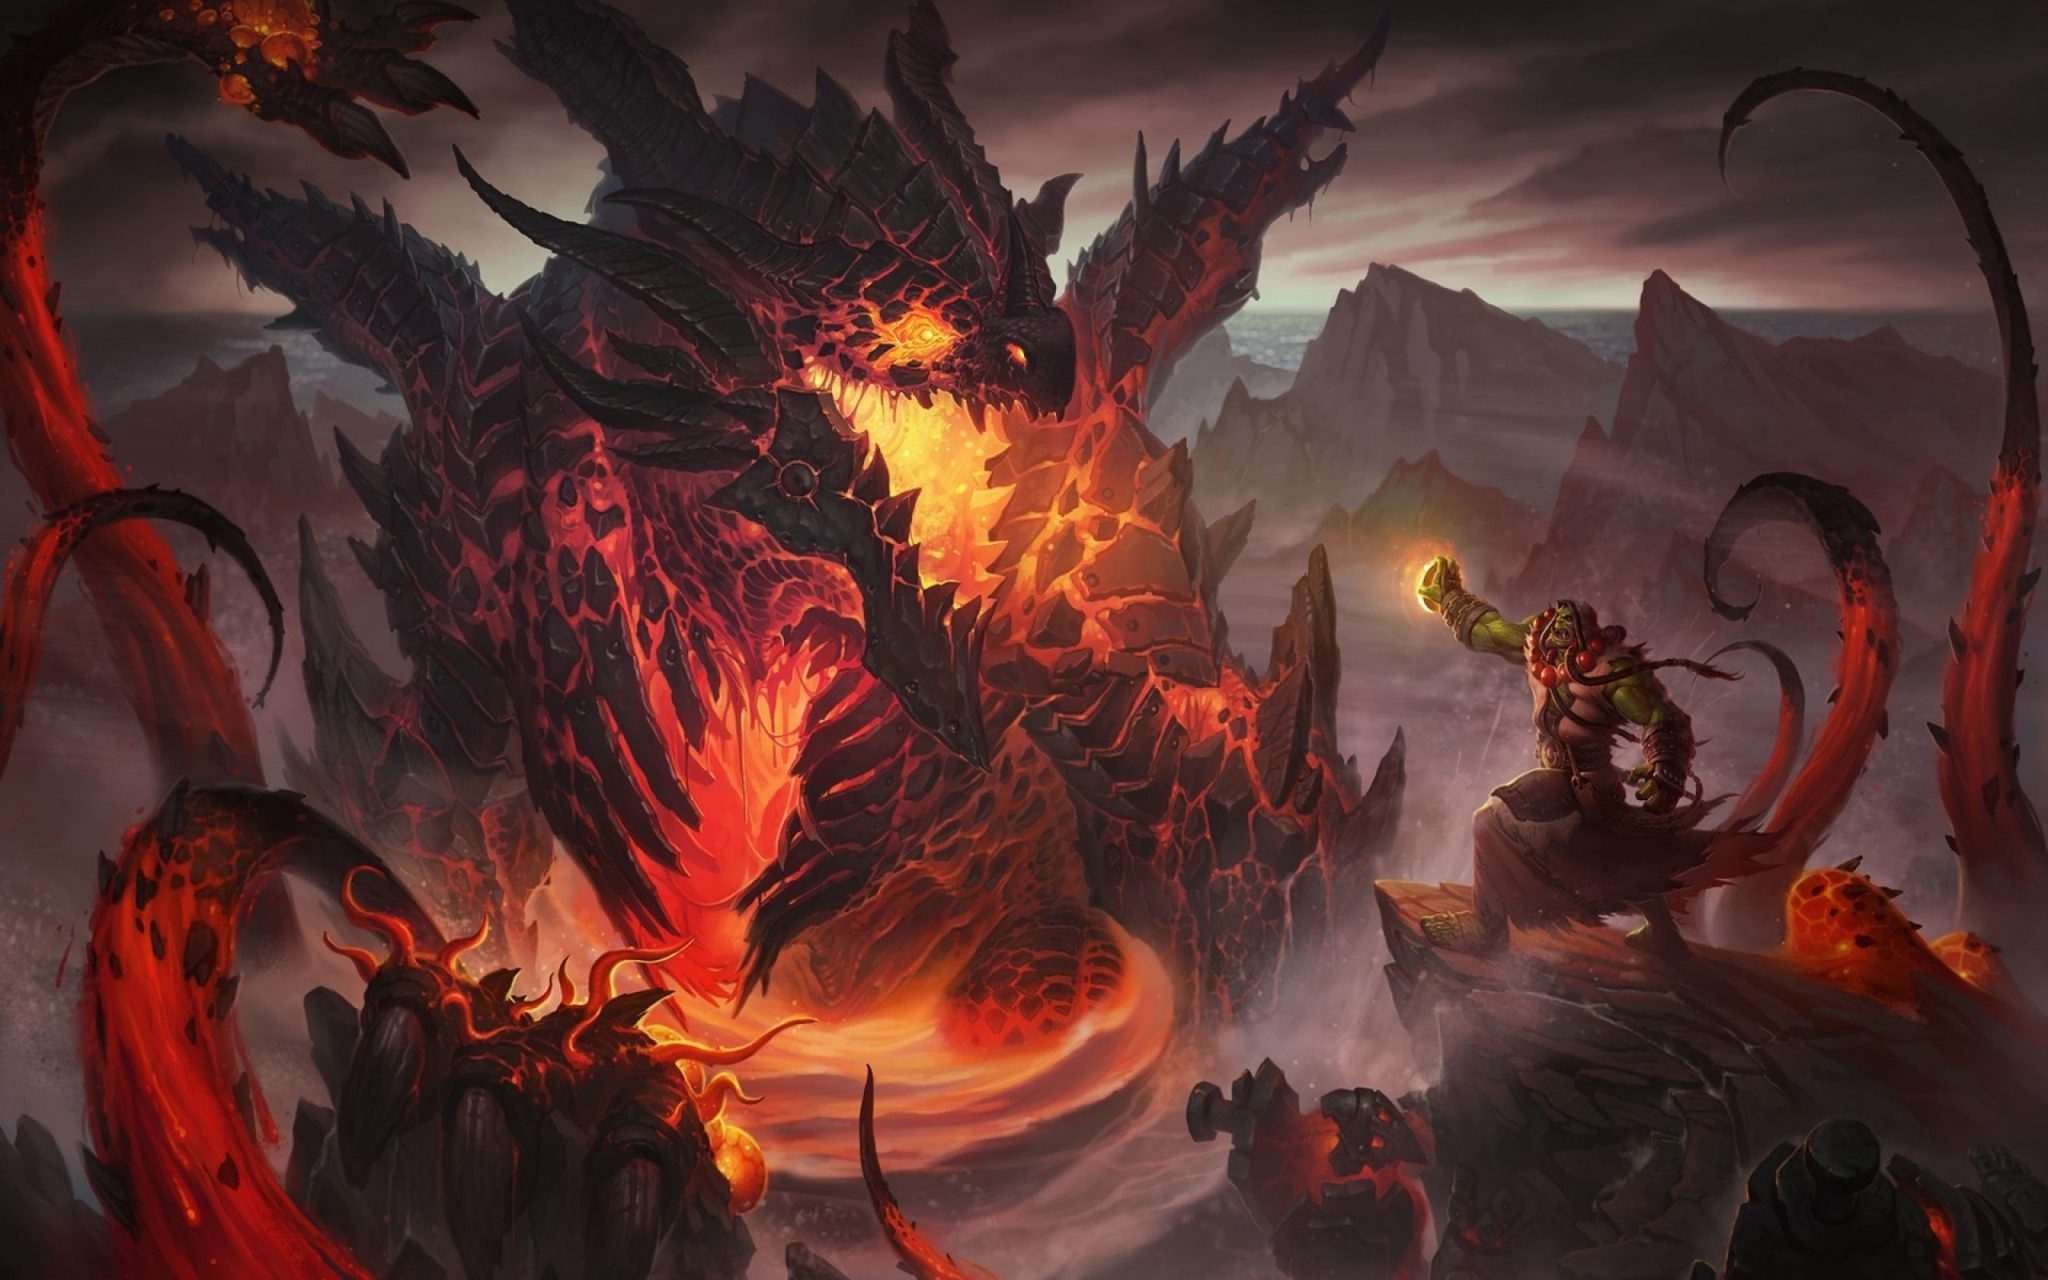 Cinematic final de World of Warcraft Cataclysm - Treta na comunidade de World of Warcraft no Brasil - Blog Farofeiros